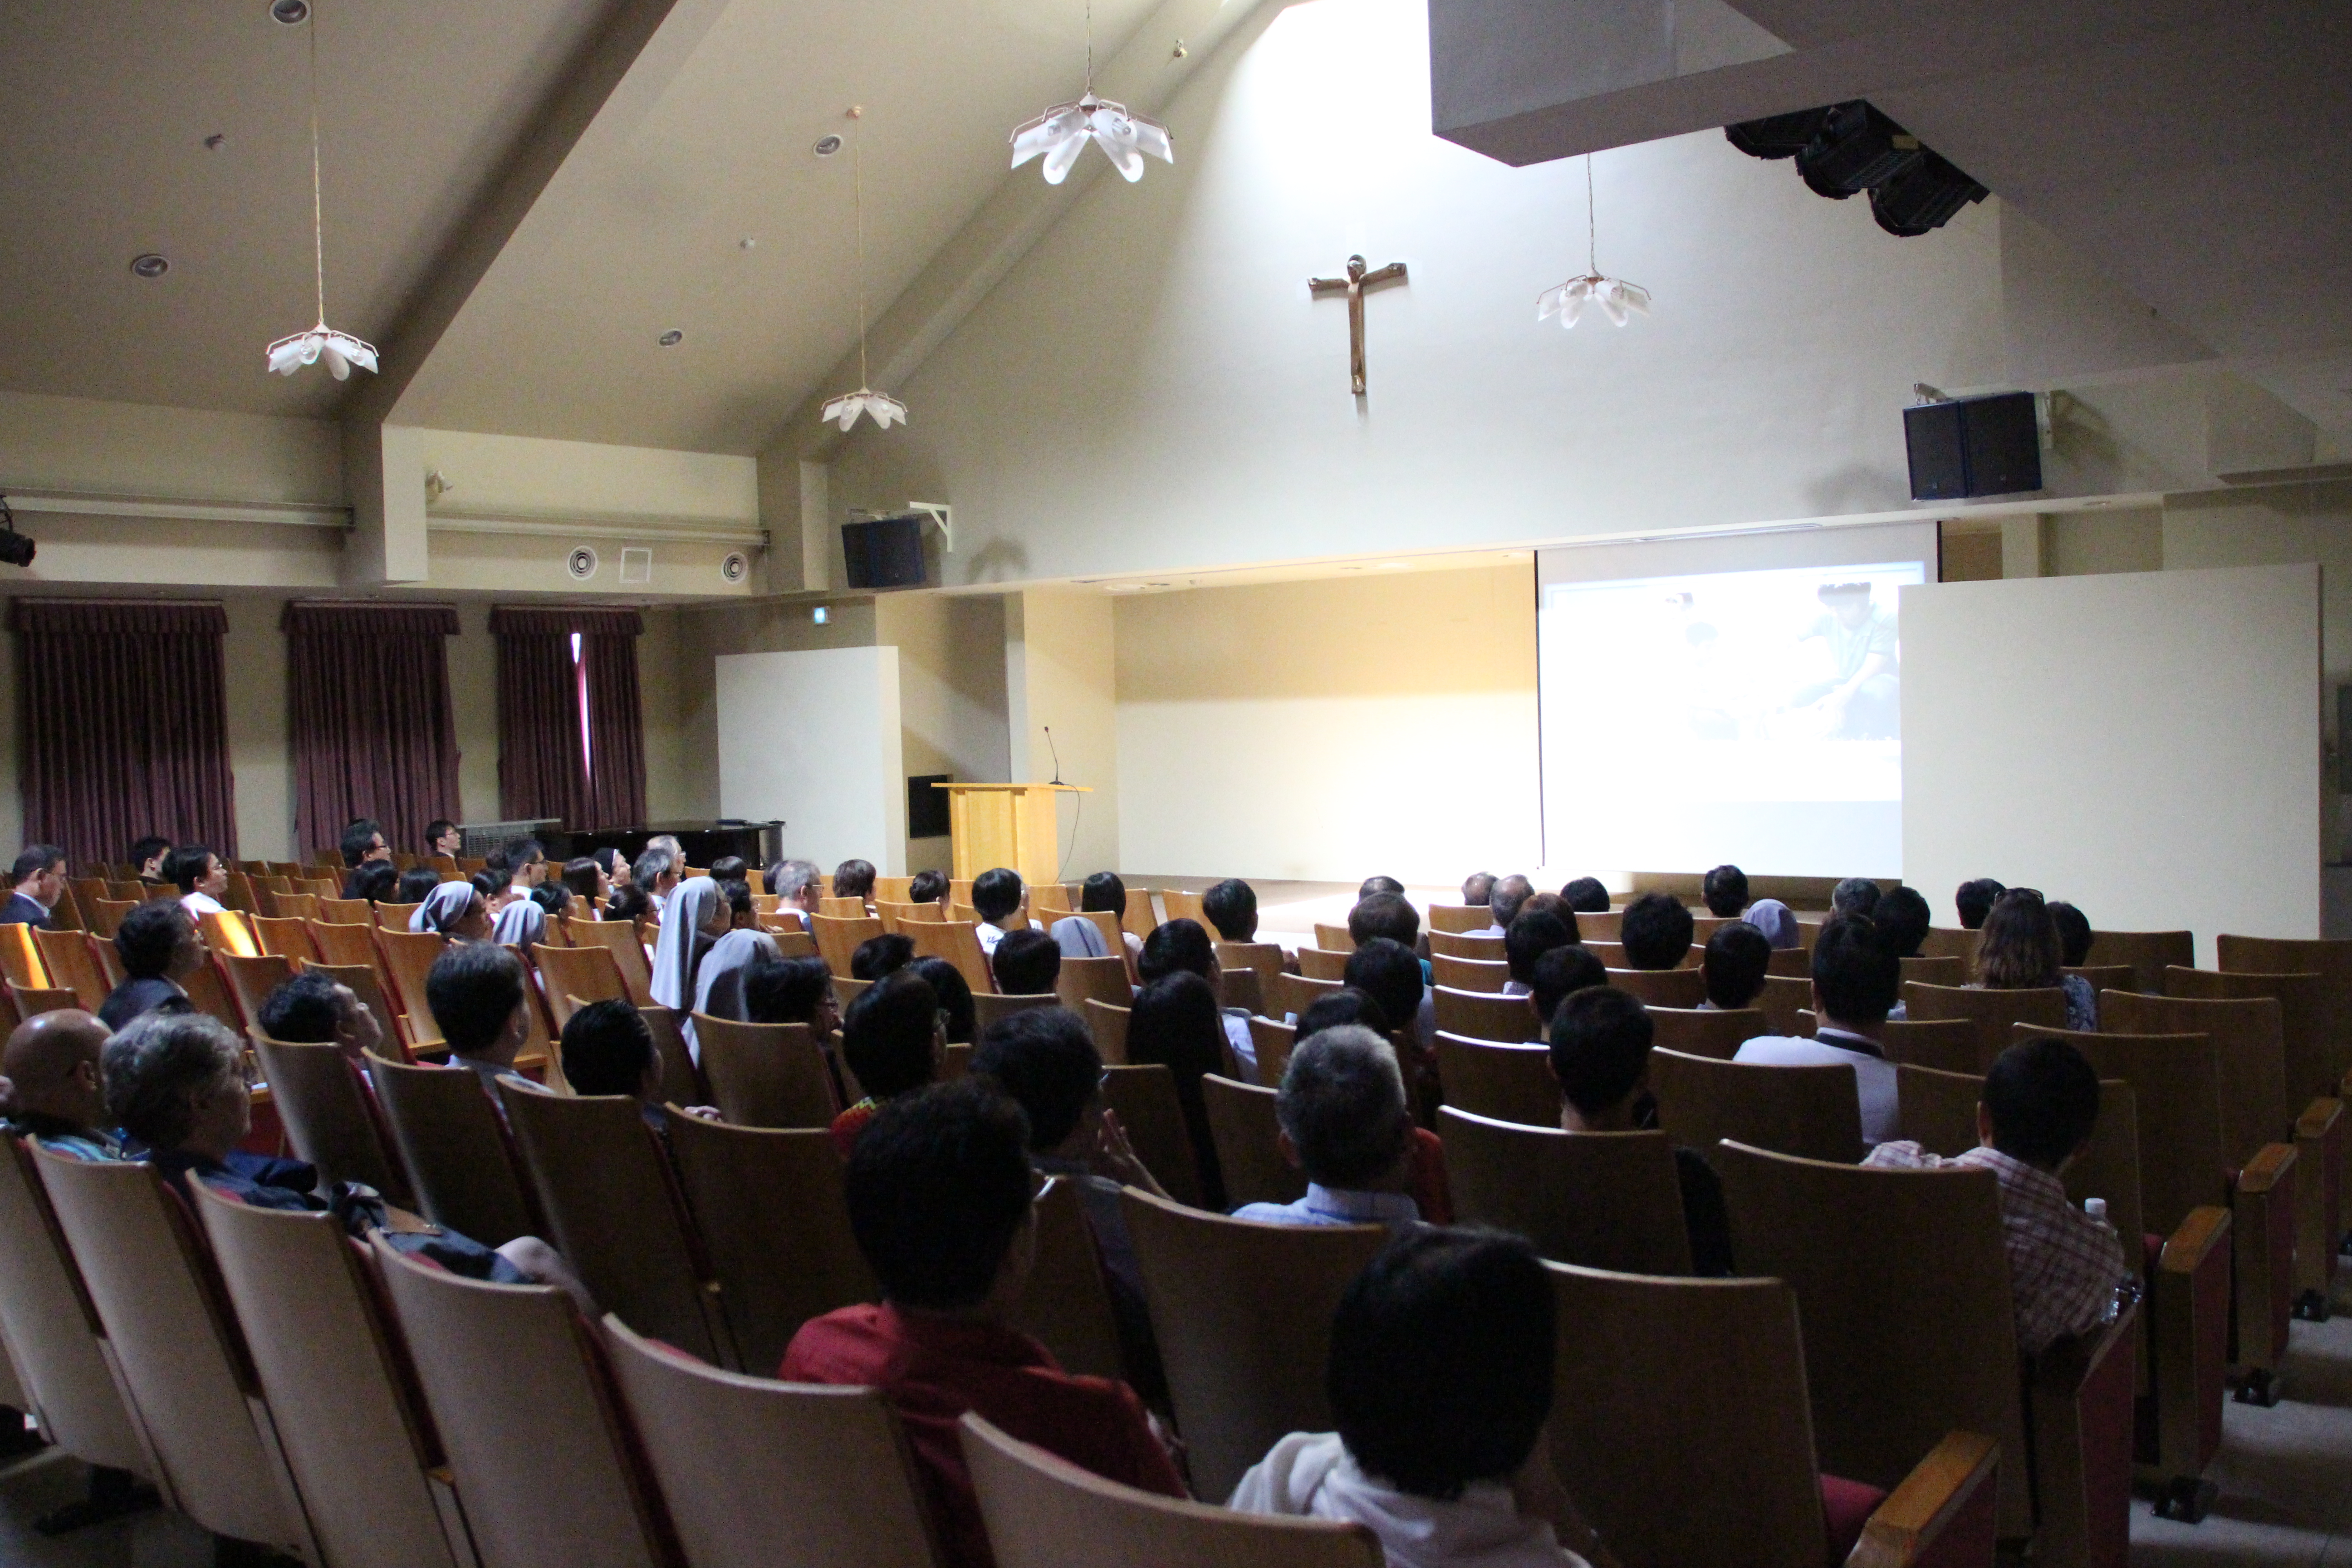 아시아가톨릭대학연합총회 참석자 방문(2013.8.23)의 관련된 이미지 입니다.